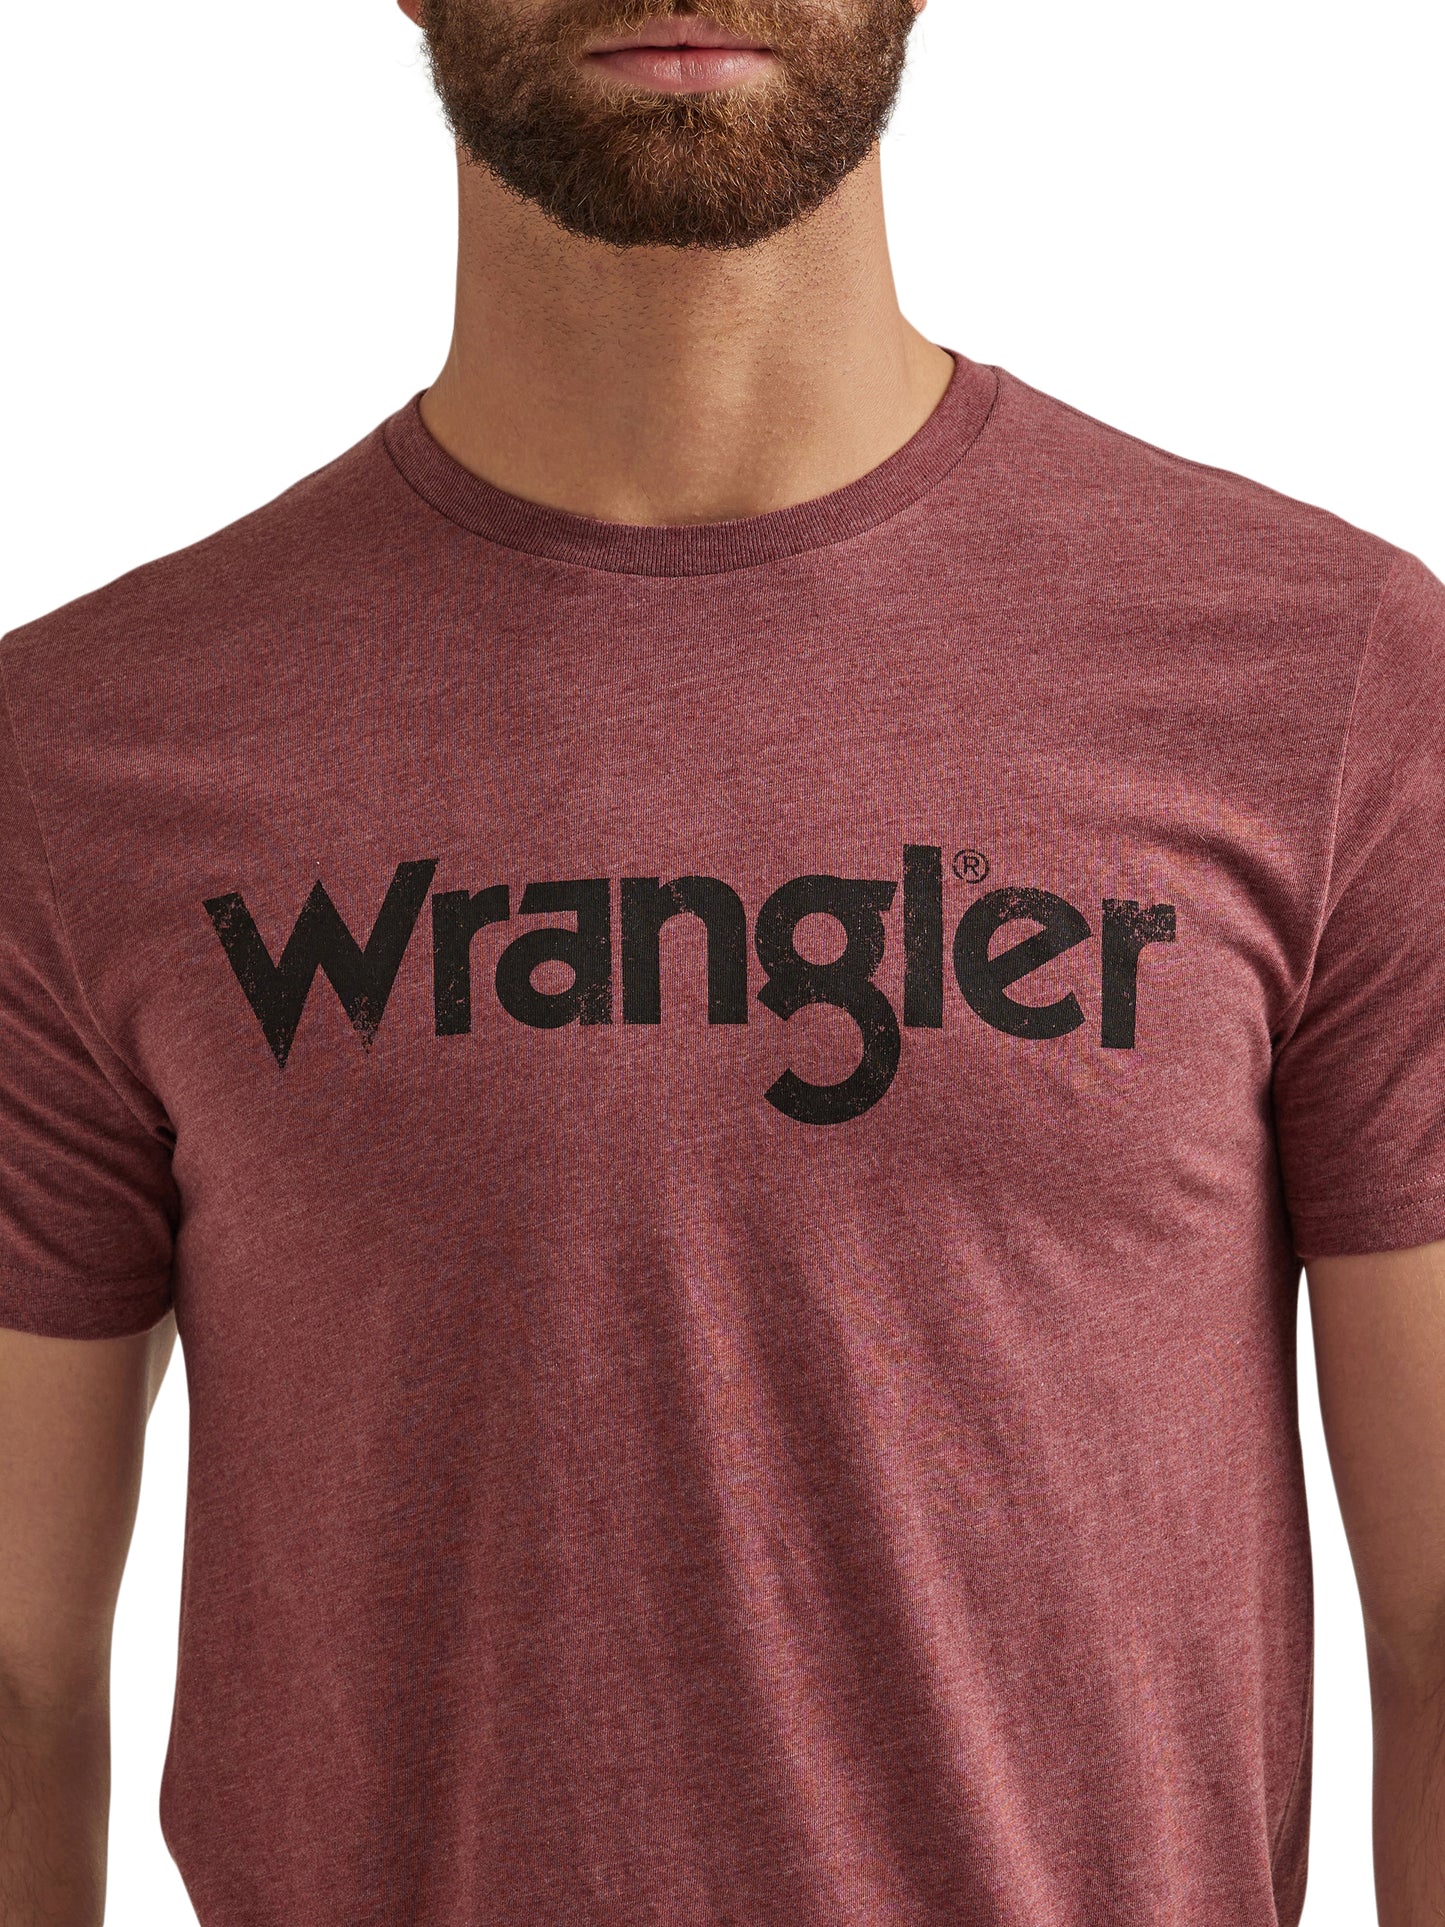 Wrangler Men's Burgandy T-Shirt